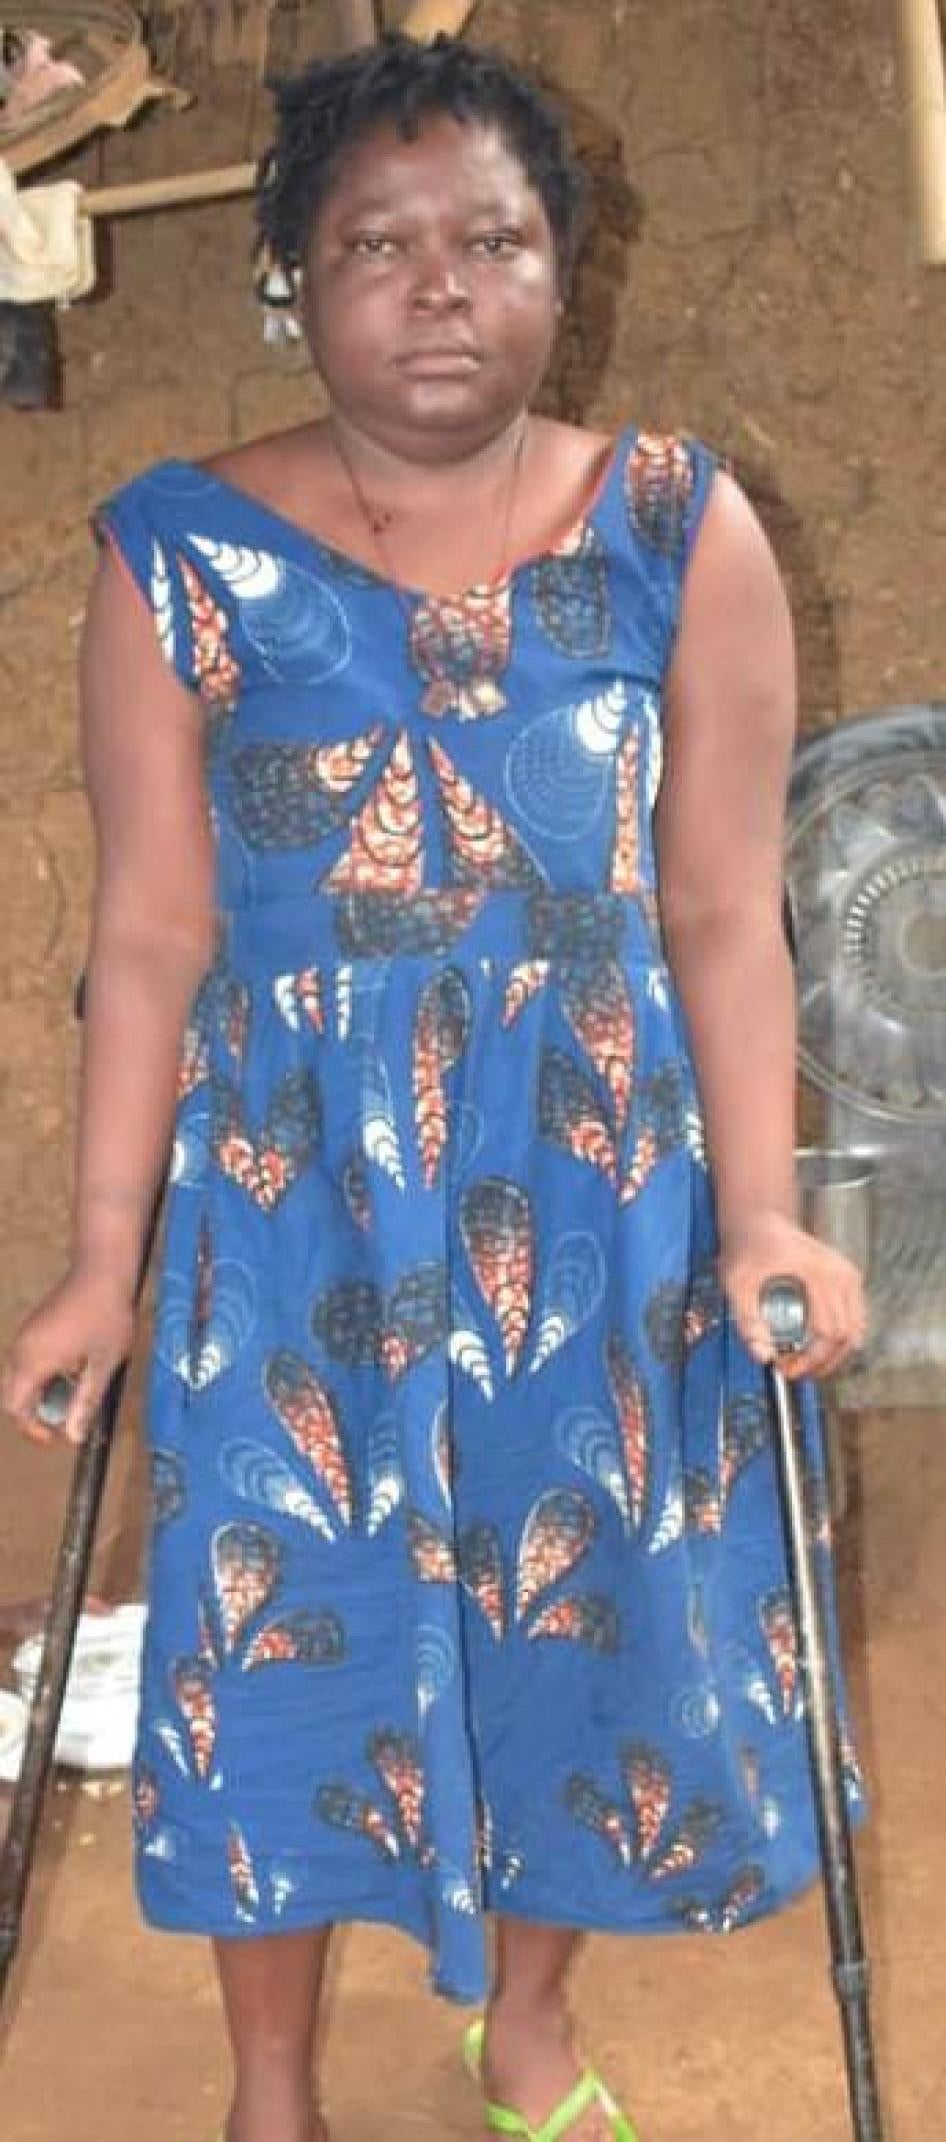 Ebai Rose Deba, 31 ans, a un handicap physique et a été forcée de fuir son village du sud-ouest du Cameroun en février 2019 suite aux violences. Le 18 mai 2019.